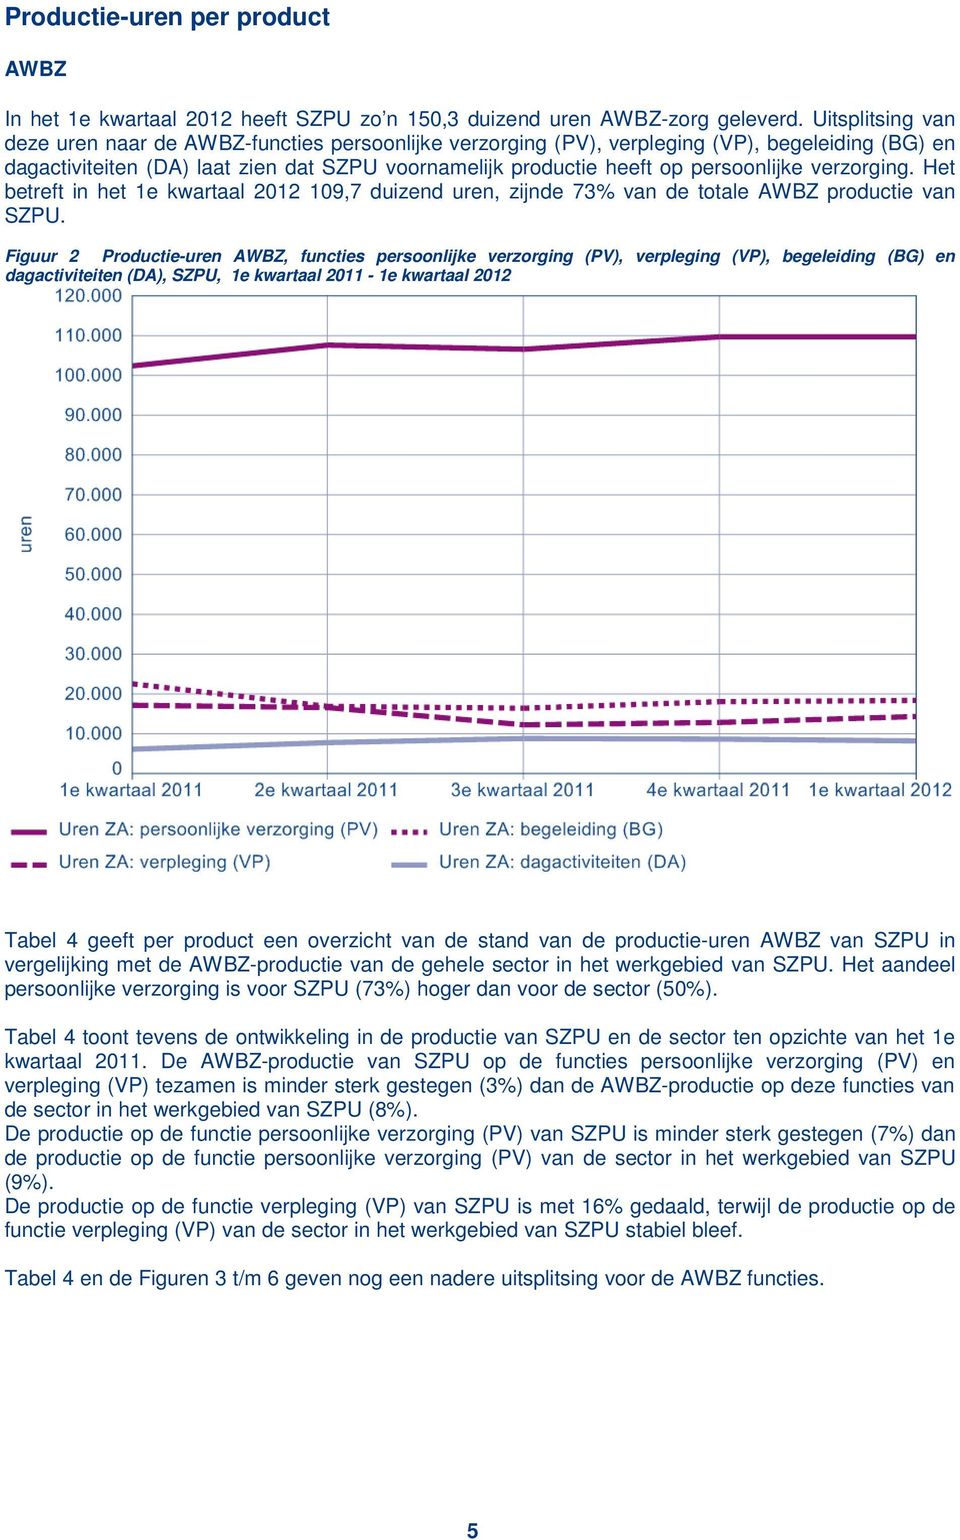 persoonlijke verzorging. Het betreft in het 1e kwartaal 2012 109,7 duizend uren, zijnde 73% van de totale AWBZ productie van SZPU.